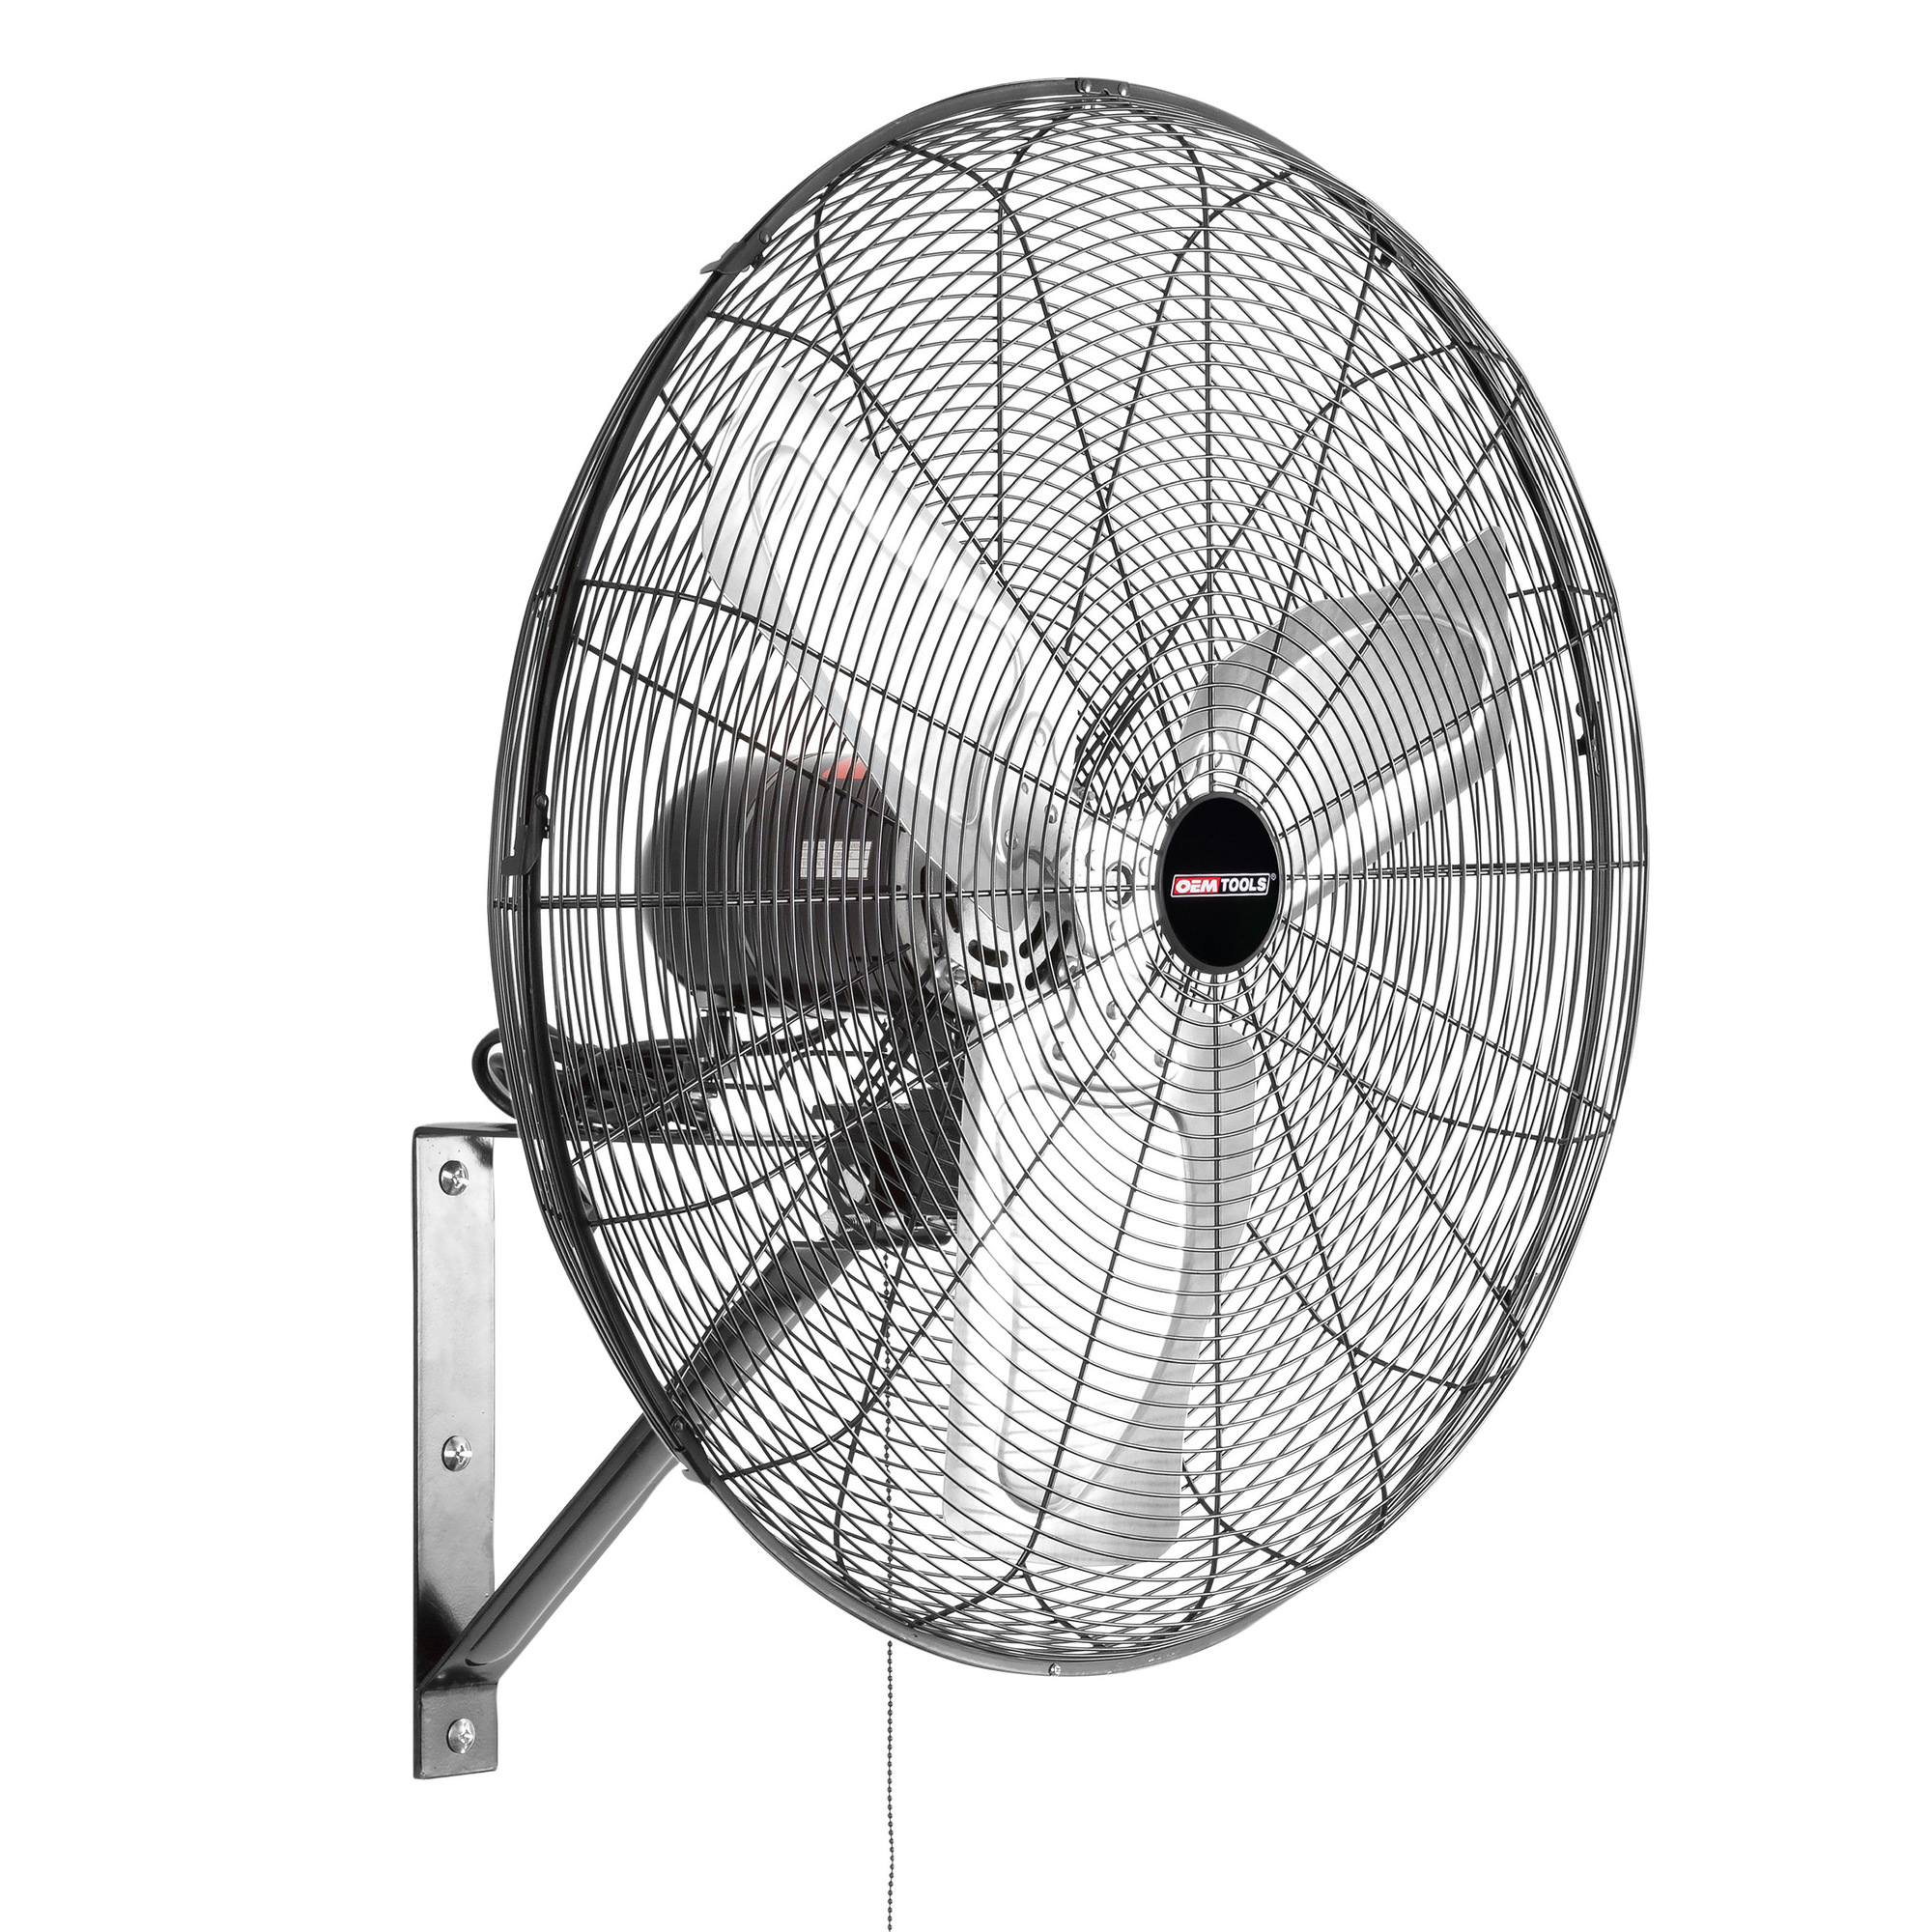 OEMTOOLS, Oscillating Wall Fan, Fan Type Wall Mount, Fan Diameter 24 in, Air Delivery 6500 cfm, Model OEM24883